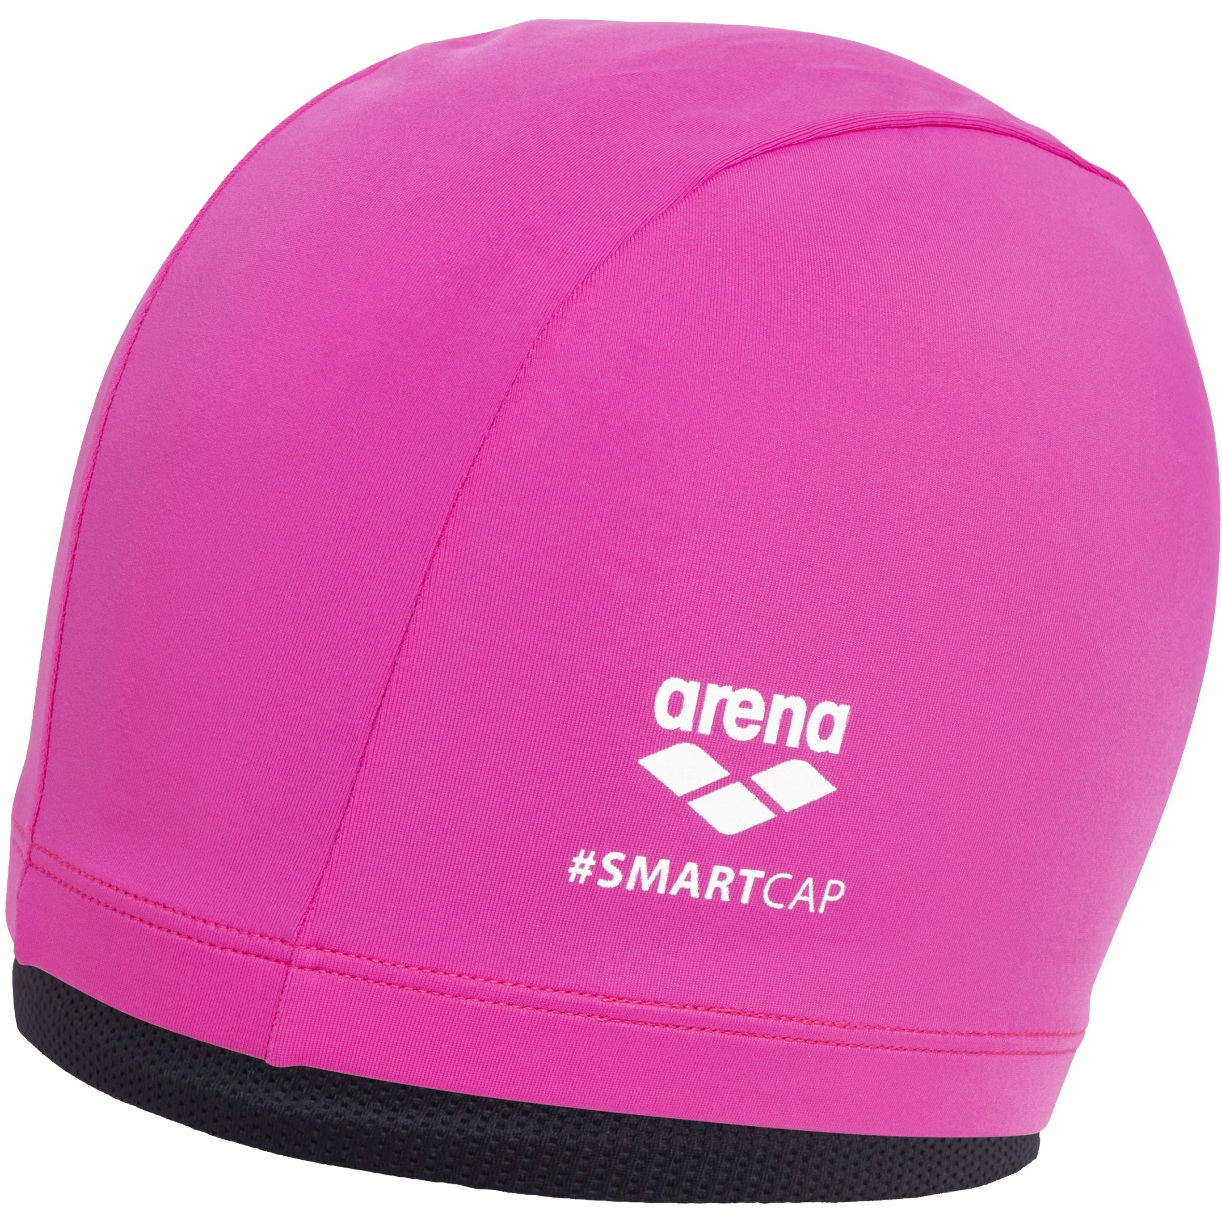 Produktbild von arena Smartcap Schwimmkappe - Fuchsia